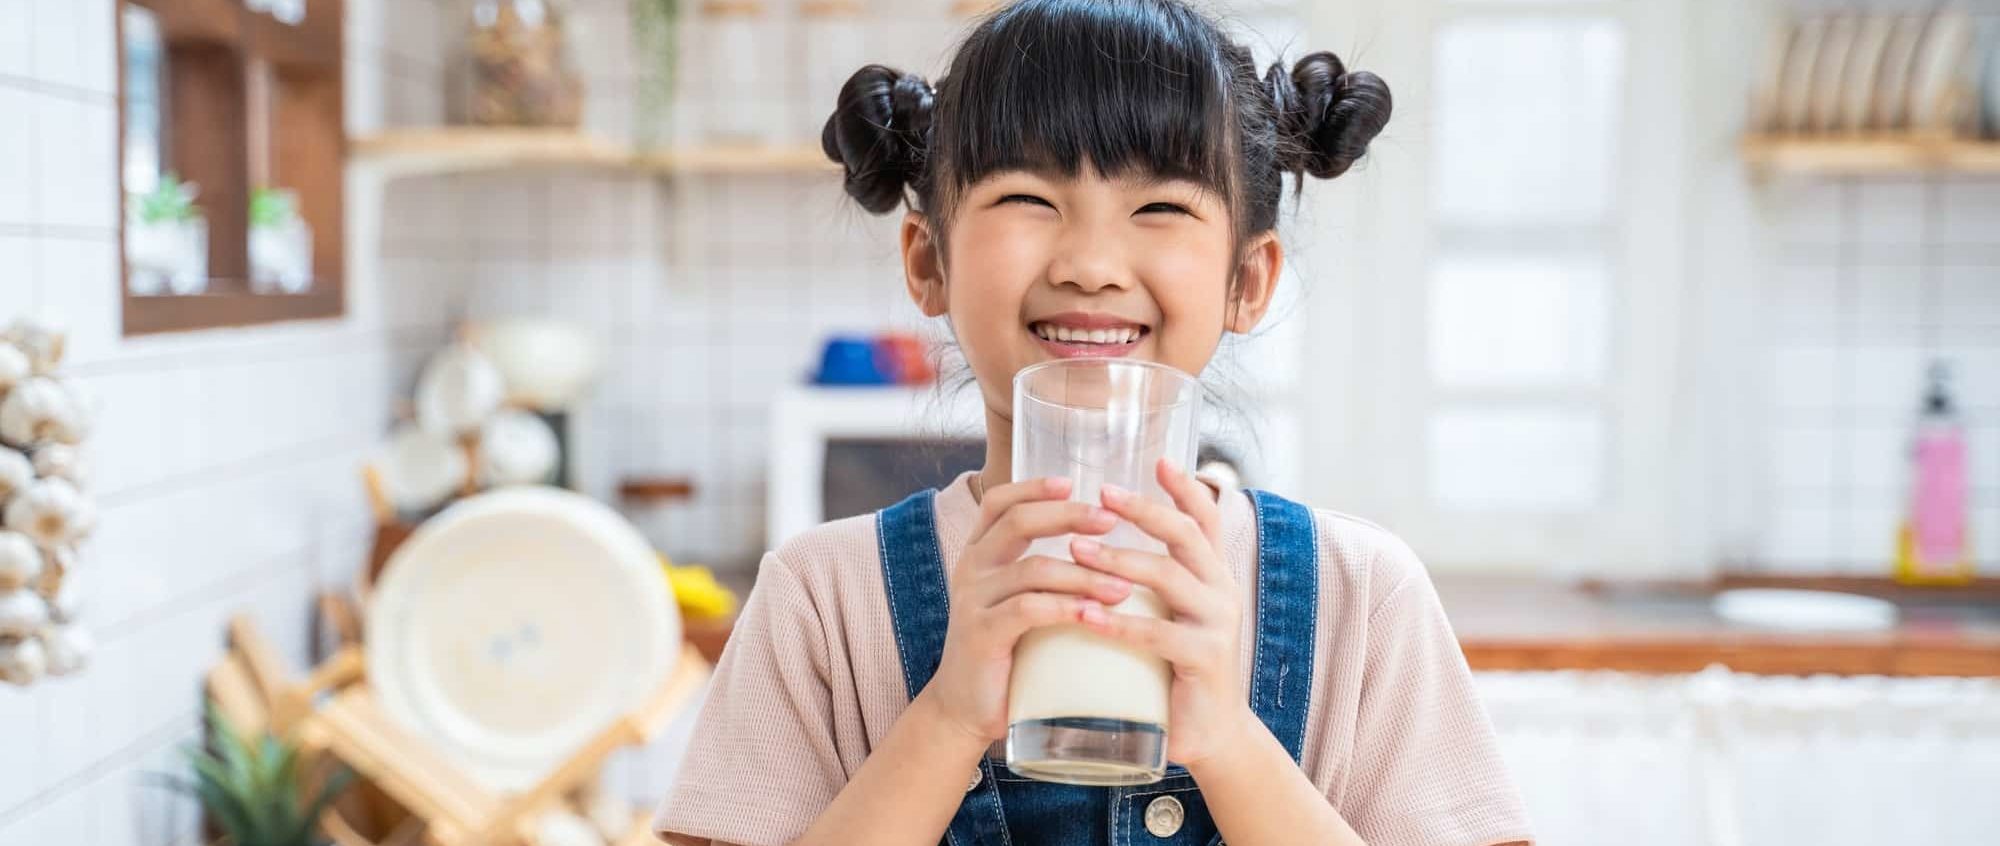 6 Health Benefits Of Milk